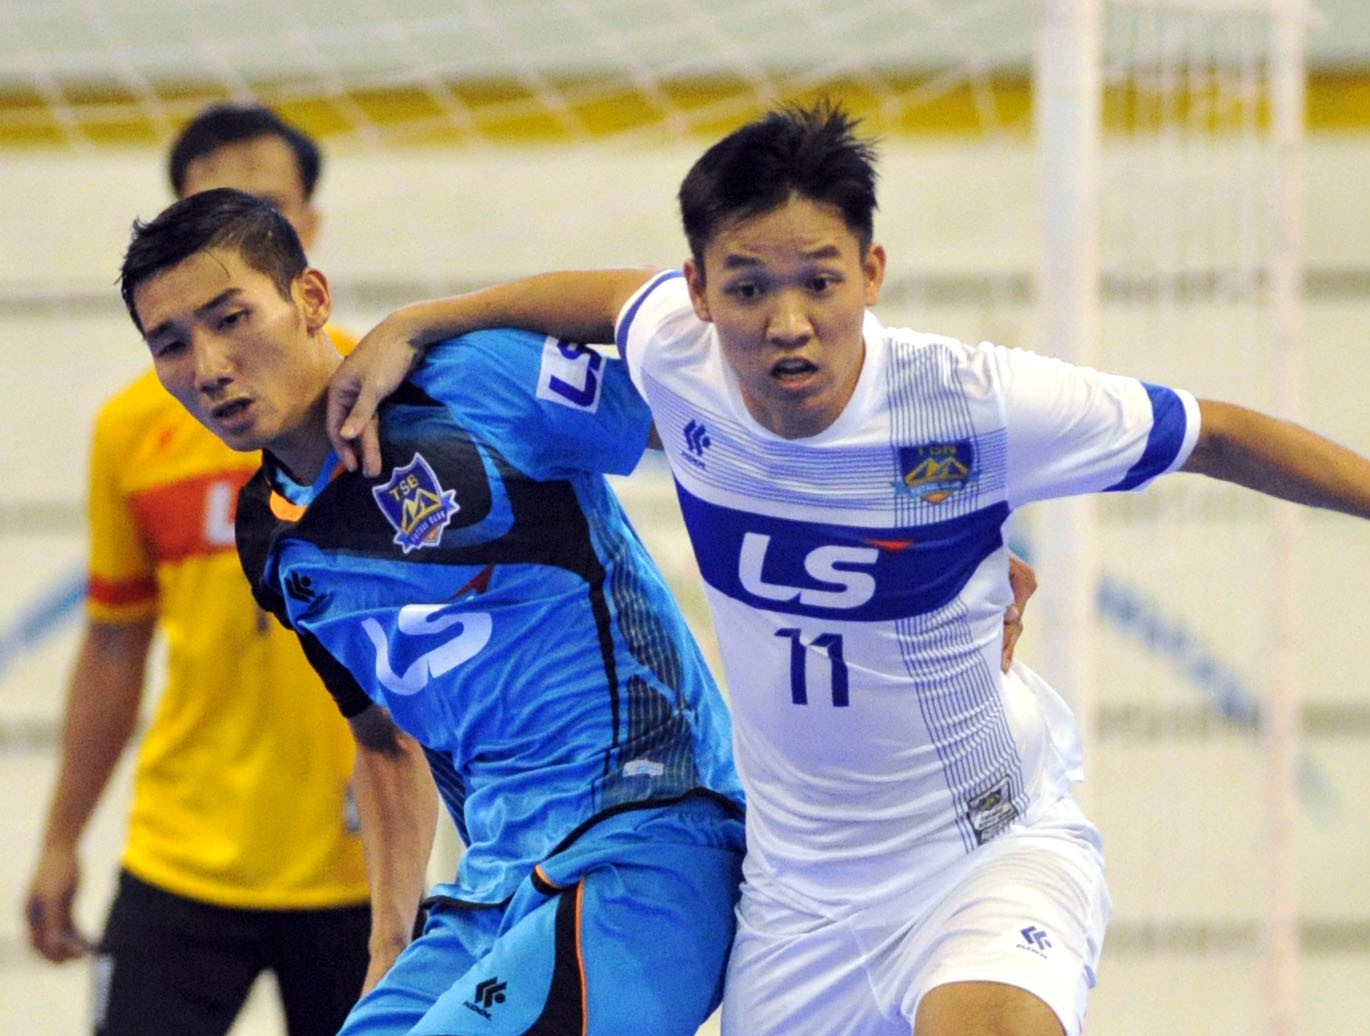 Cầu thủ futsal xuất sắc nhất năm, Trần Văn Vũ: Mong ước được dự World Cup